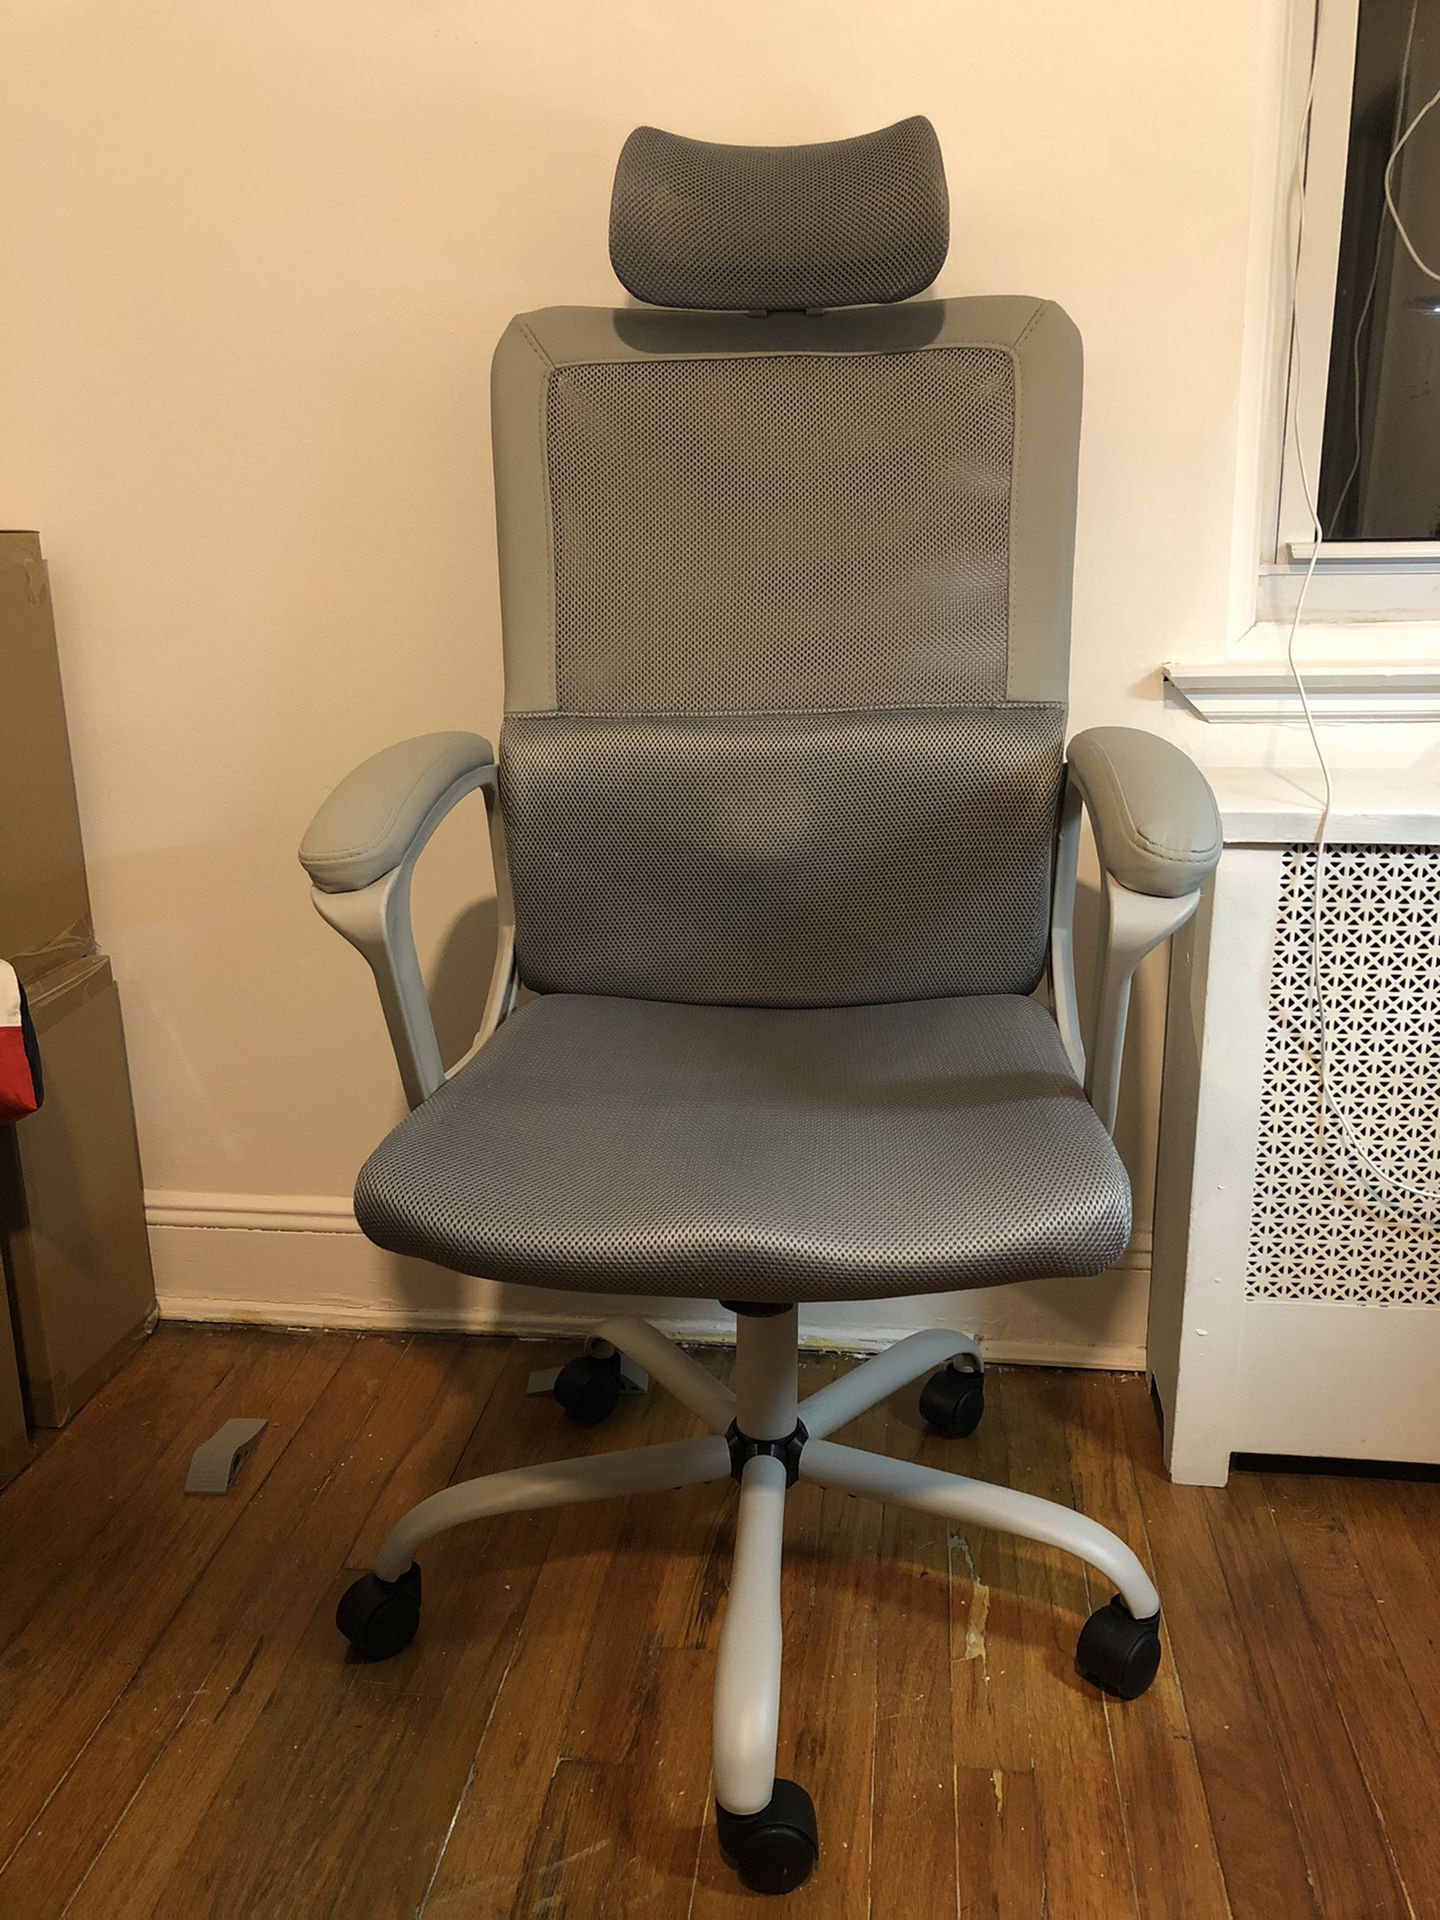 Ergonomic Office Chair w/ headrest and massager